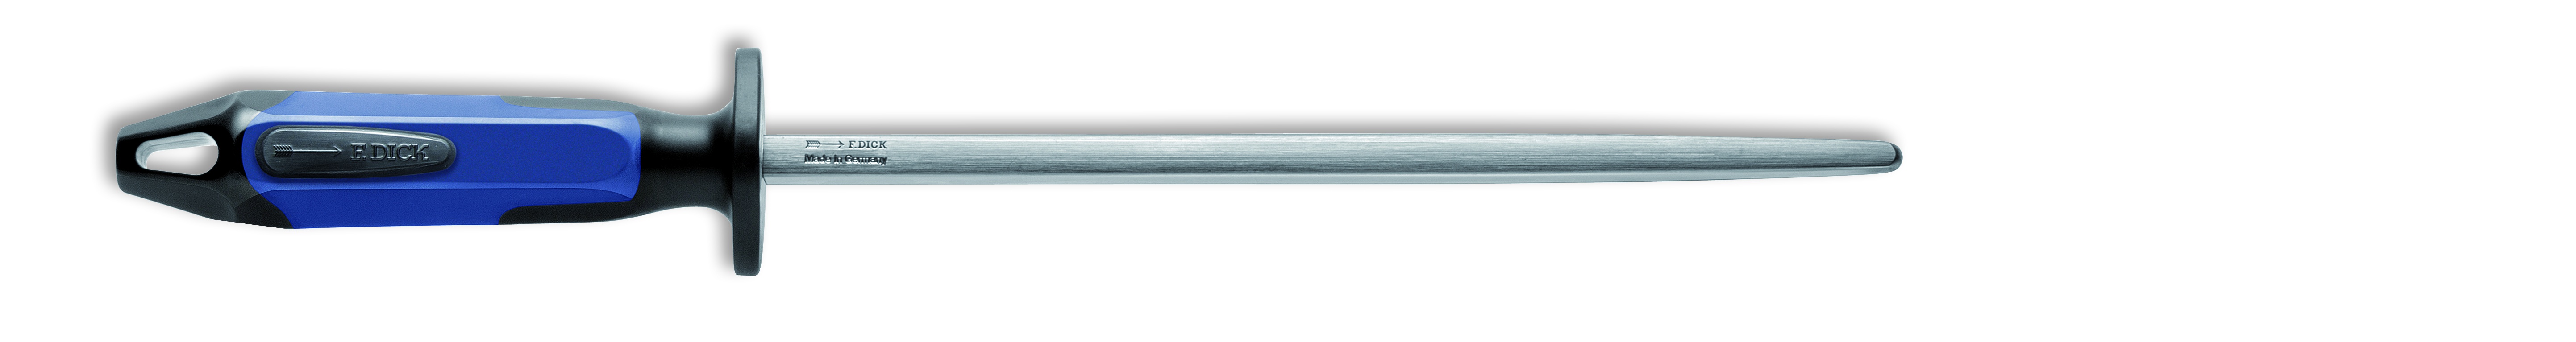 Ocílka DICK SCANDIC čtyřhranná, 25 cm, modro/černá